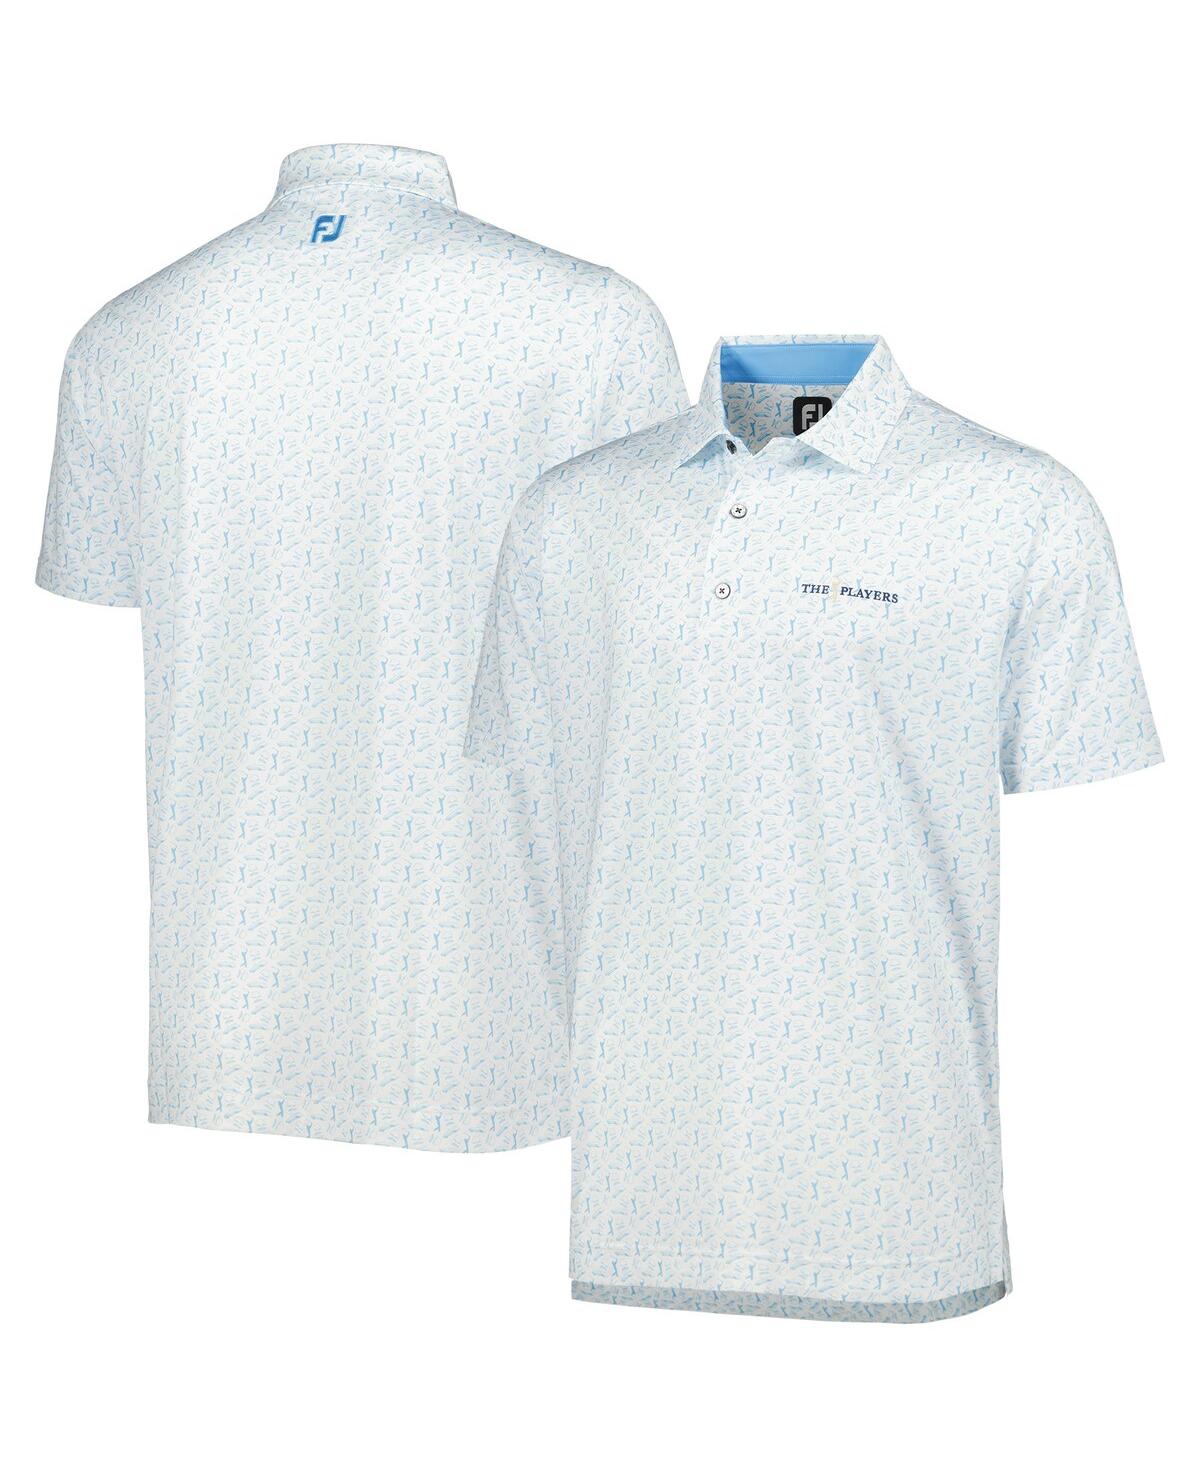 Men's FootJoy White, Light Blue The Players Allover Print ProDry Polo Shirt - White, Light Blue